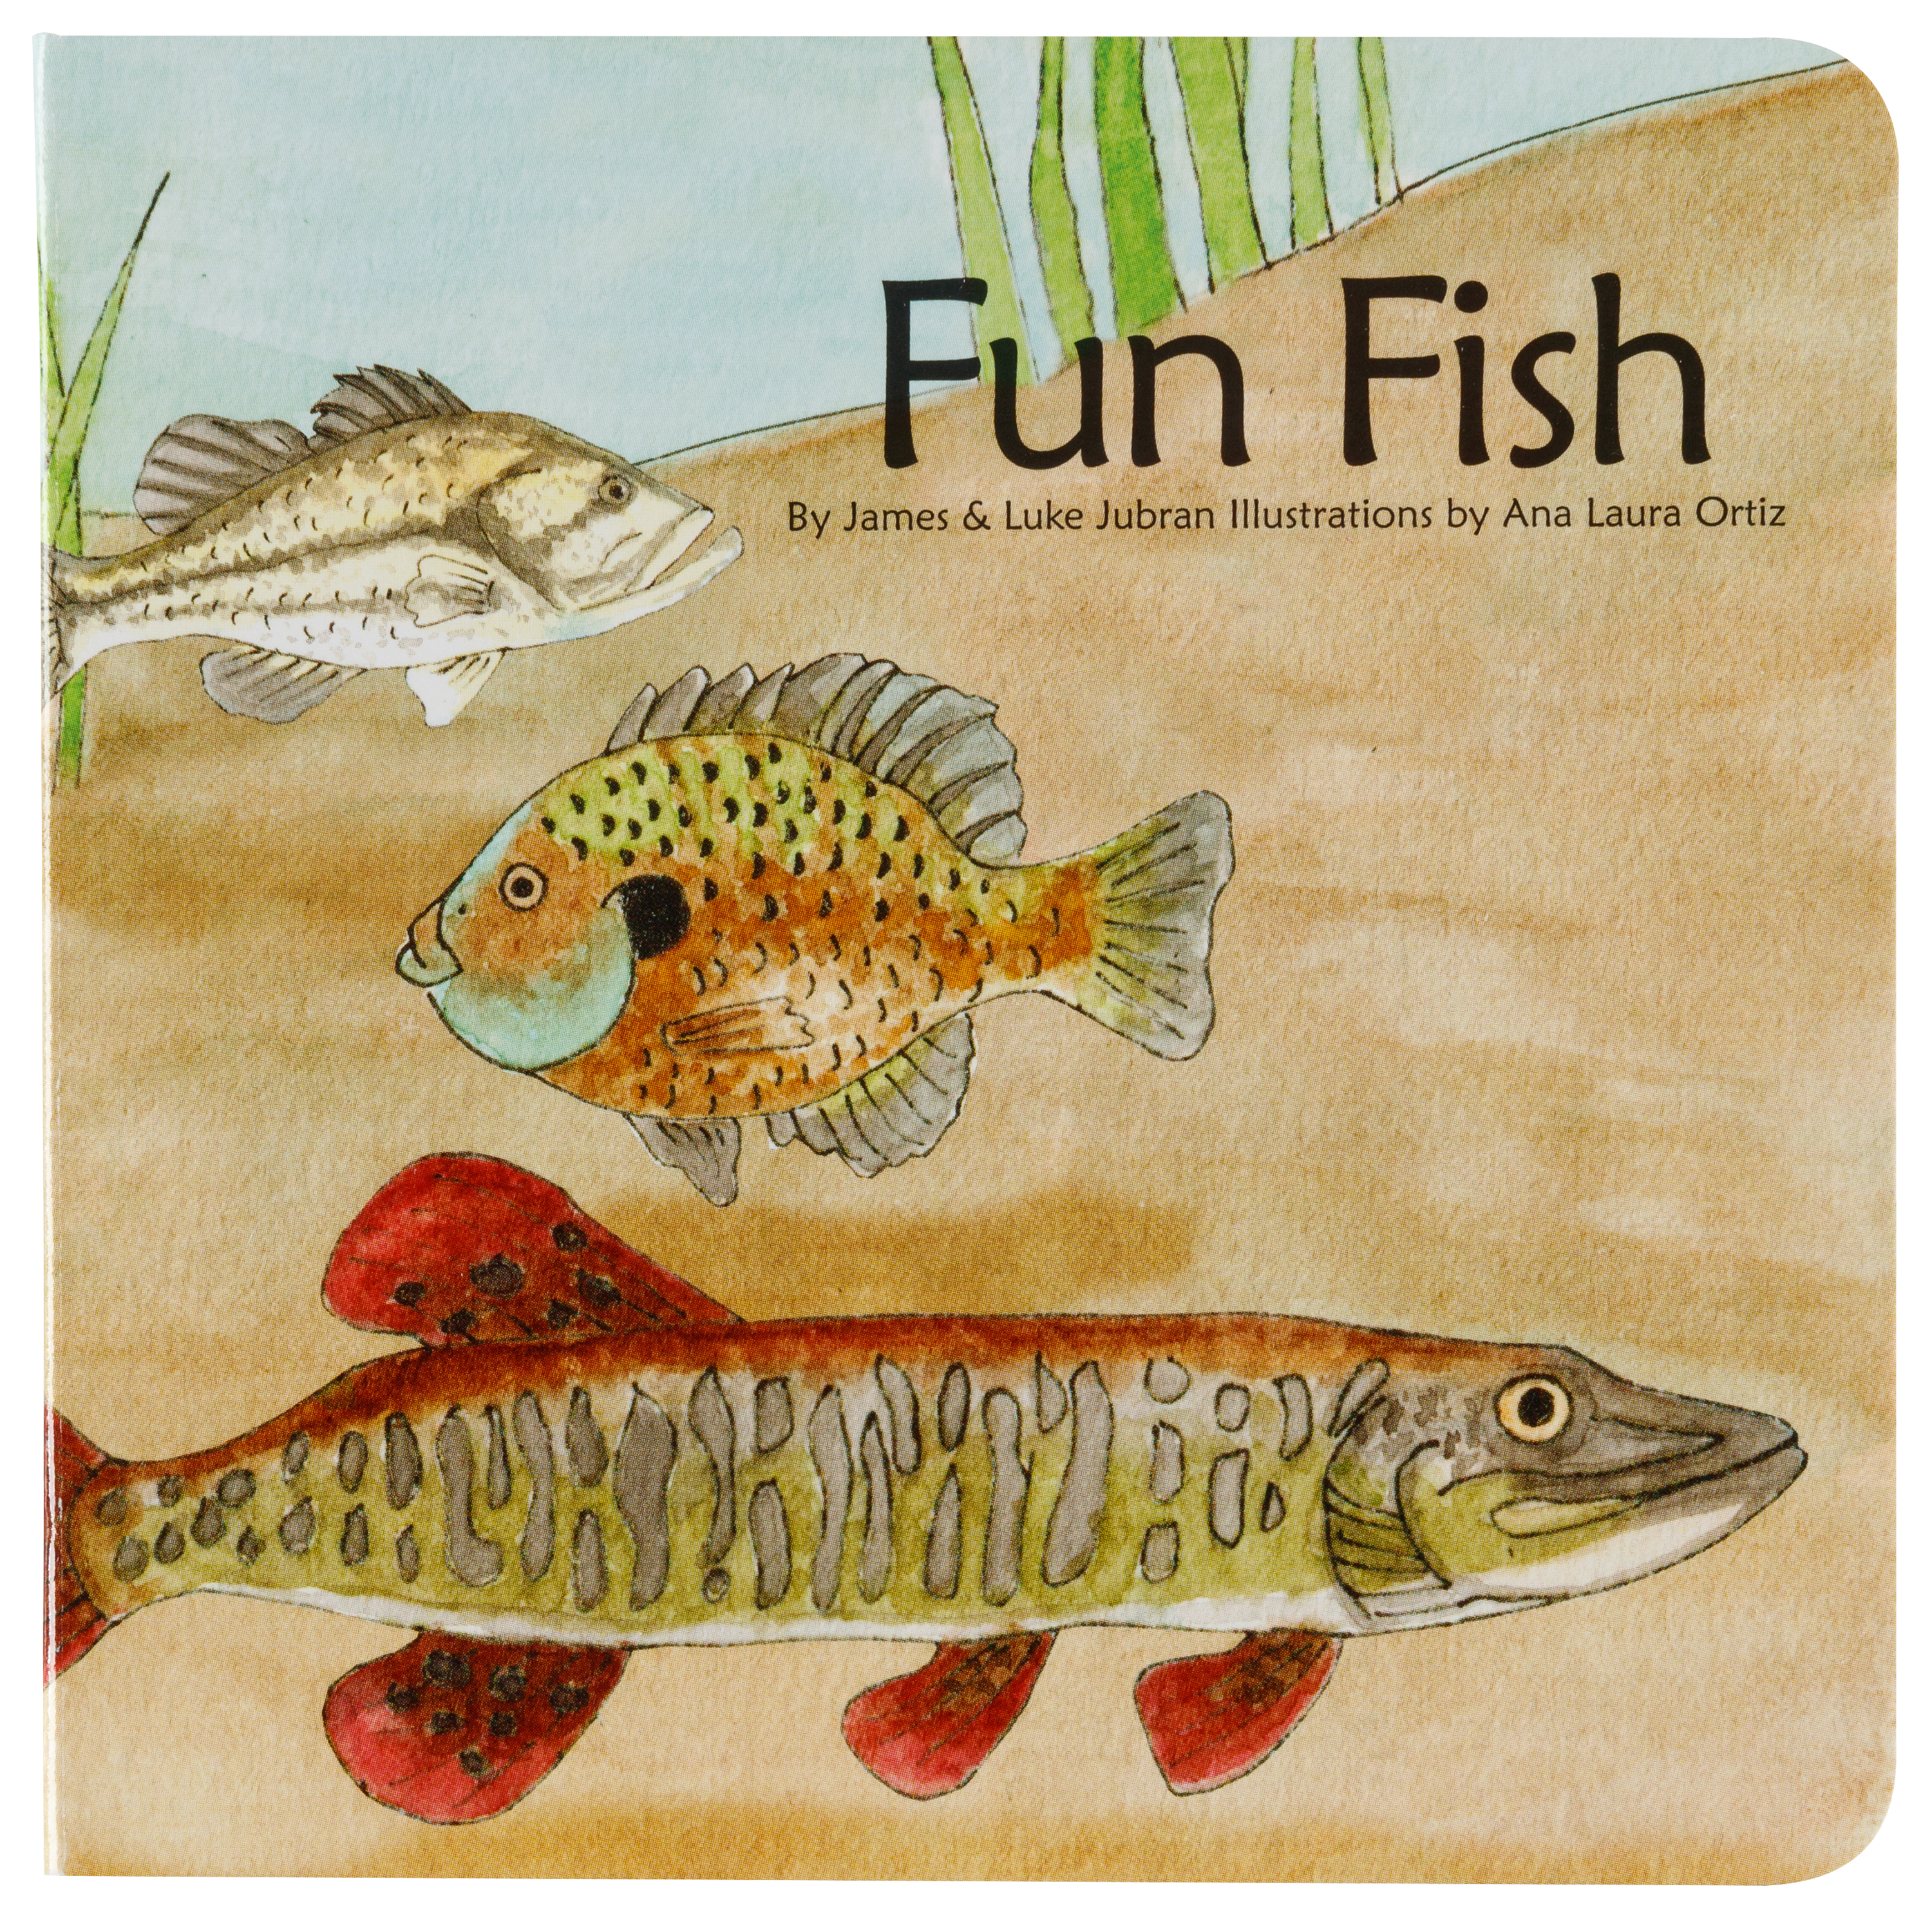 Fun Fish Board Book for Kids by James Lubran and Luke Jubran